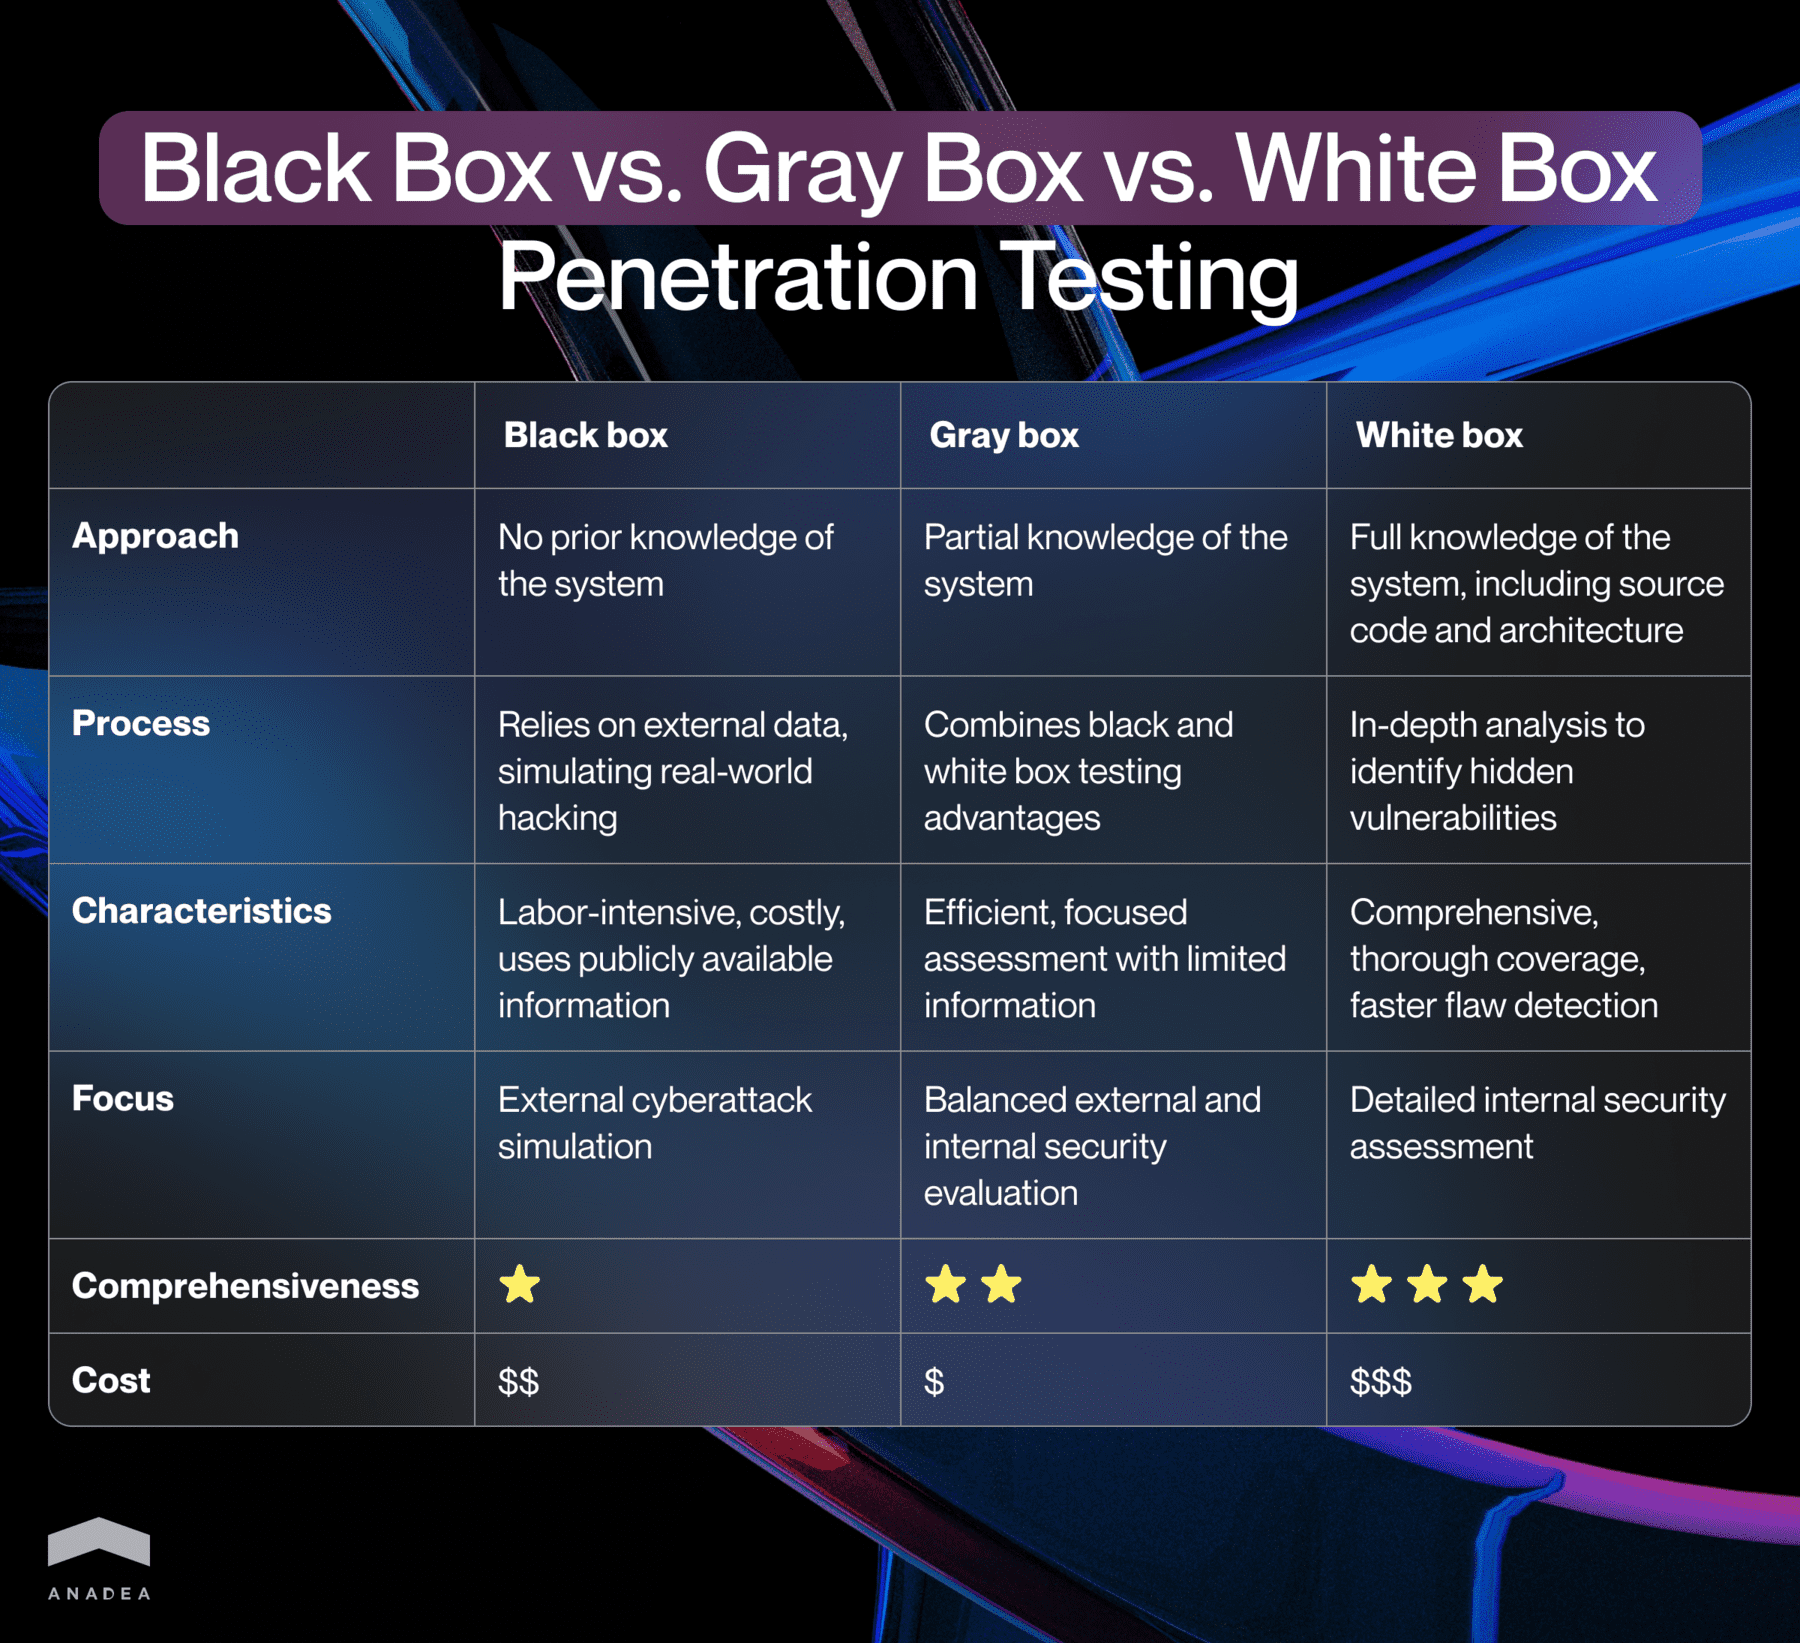 Black box vs Gray box vs White box penetration testing comparison table